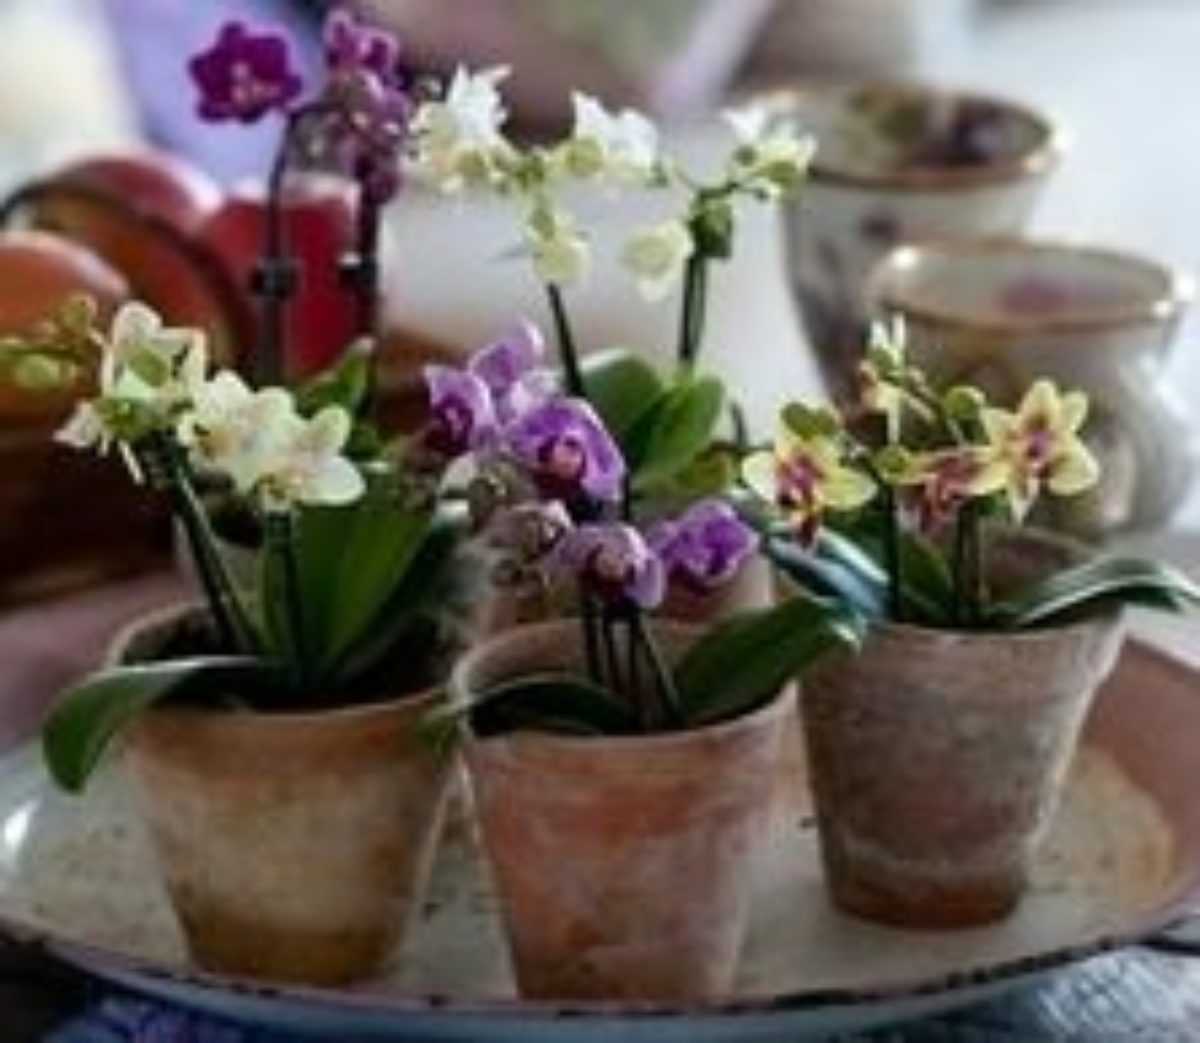 Уход за орхидеей (фаленопсис) в домашних условиях после покупки. 7 важнейших правил, размножение, фото сортов